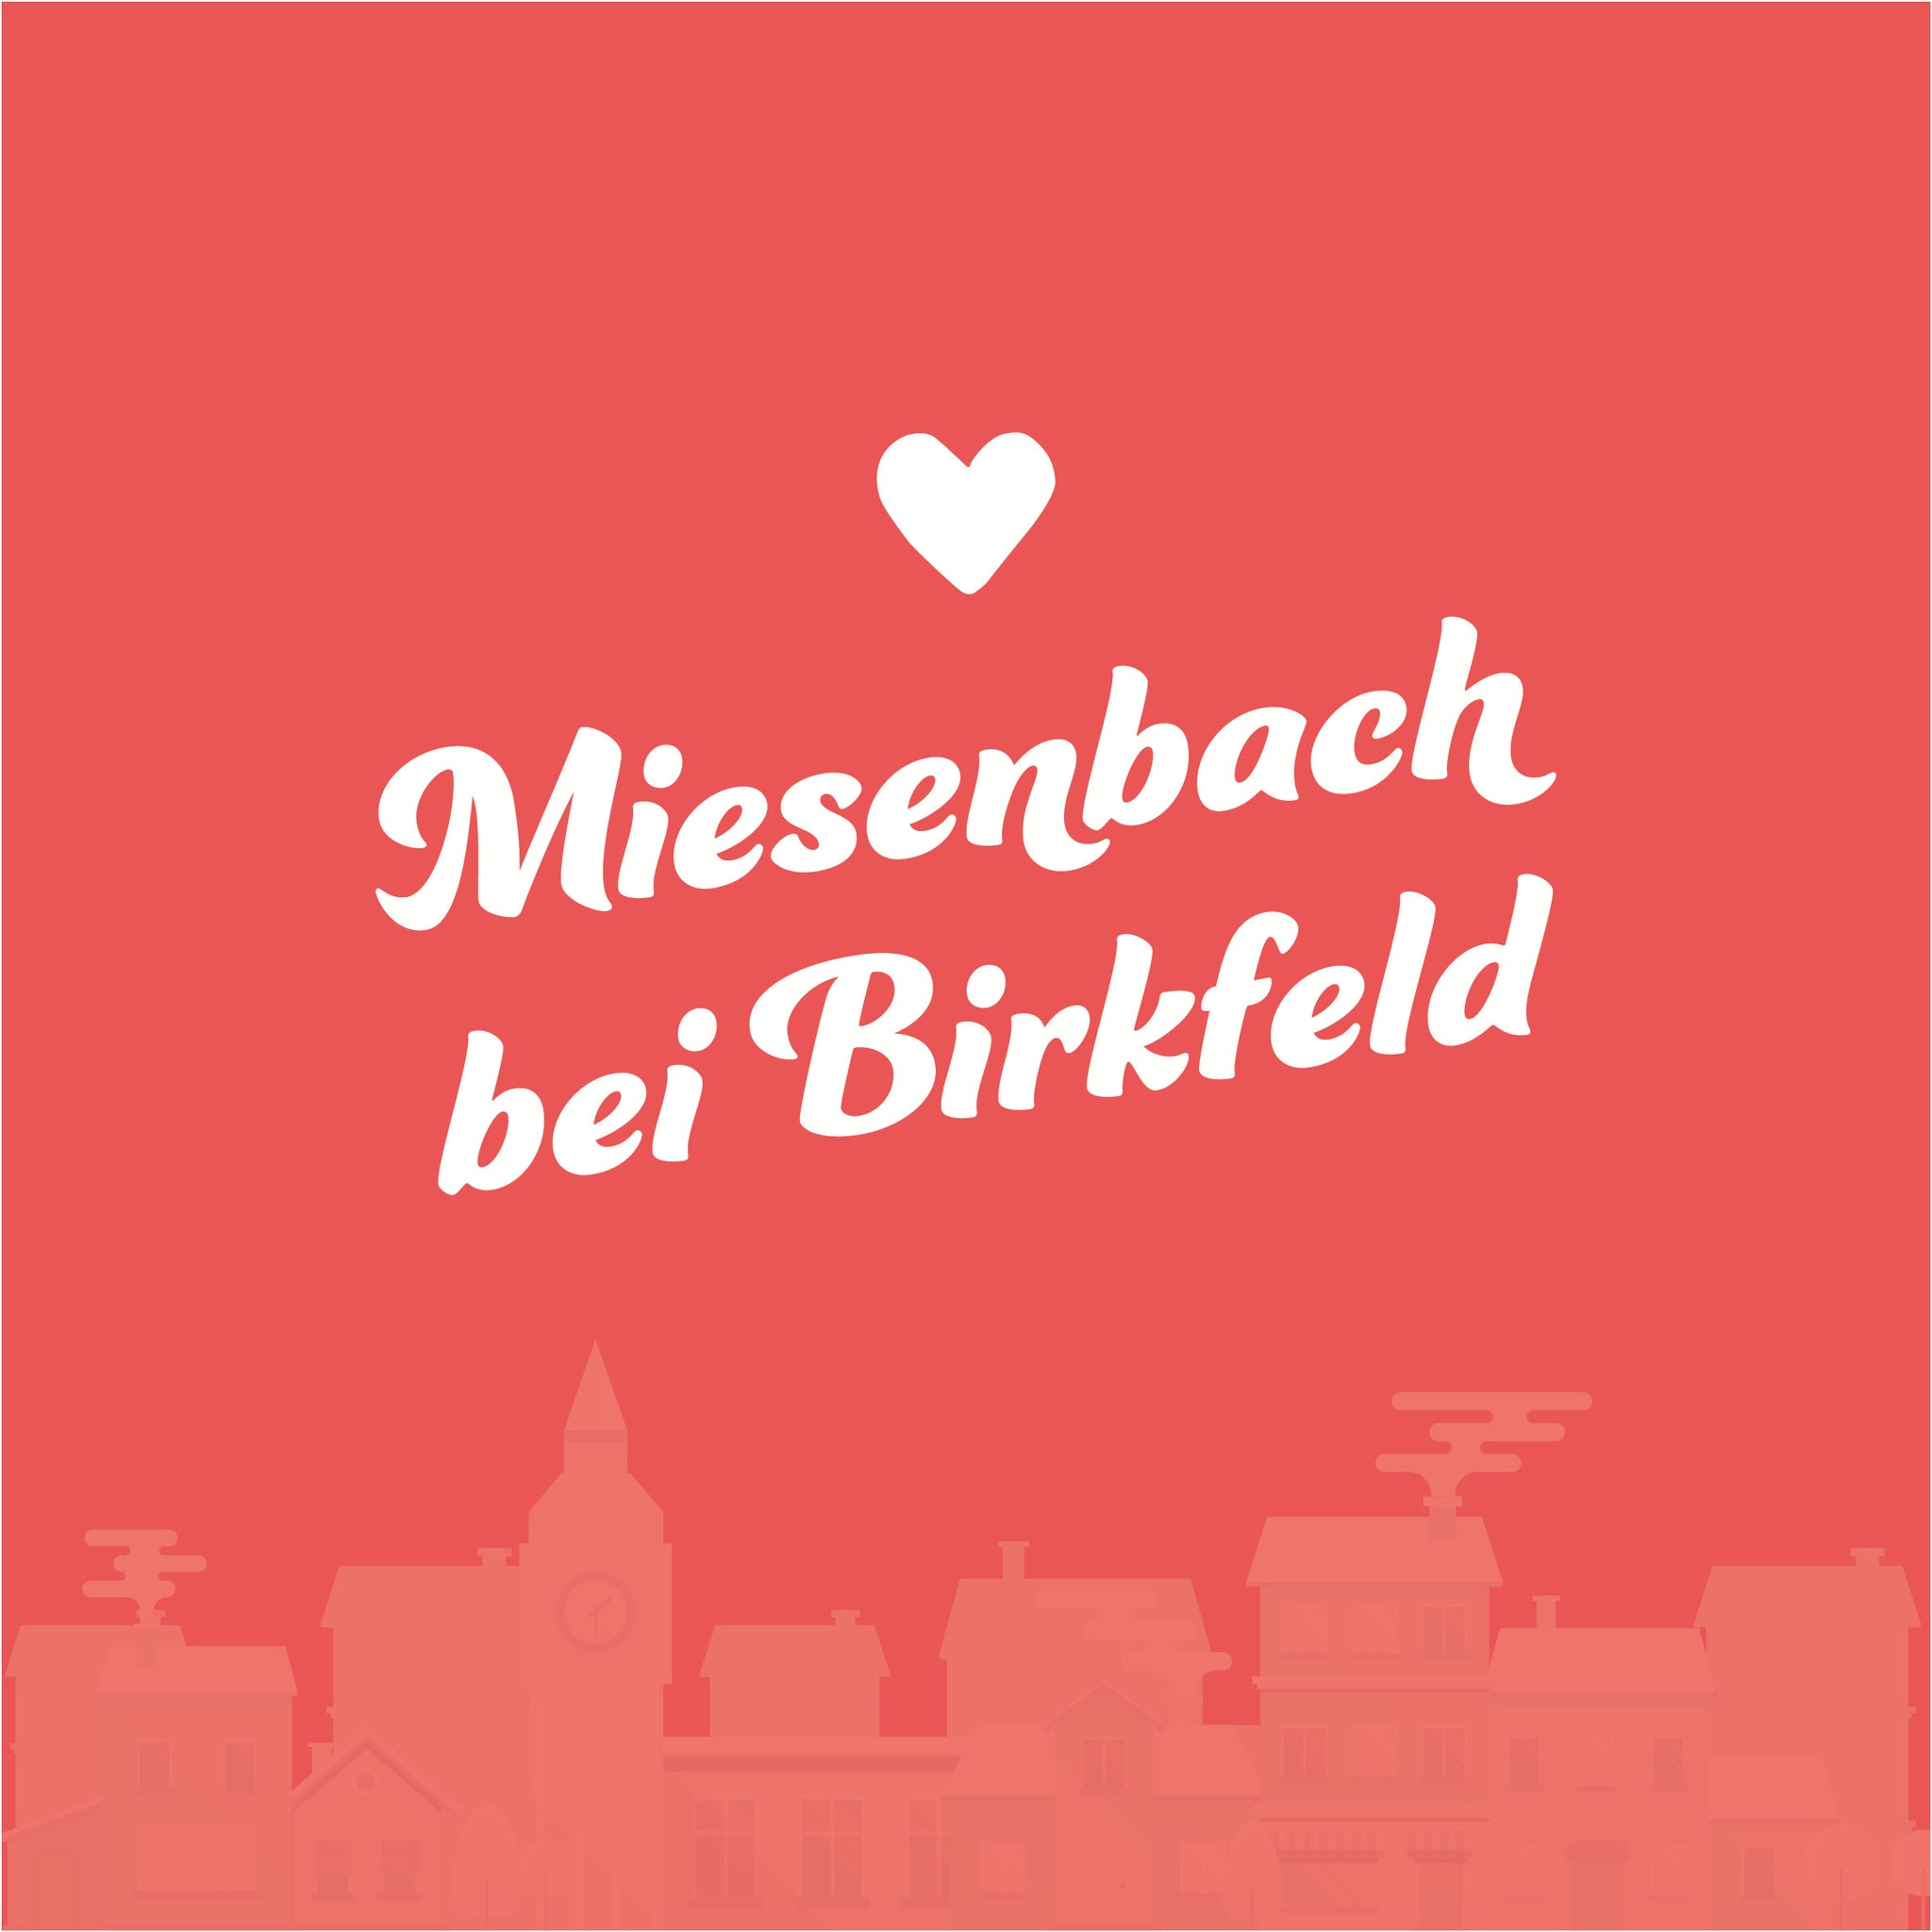 Miesenbach bei Birkfeld